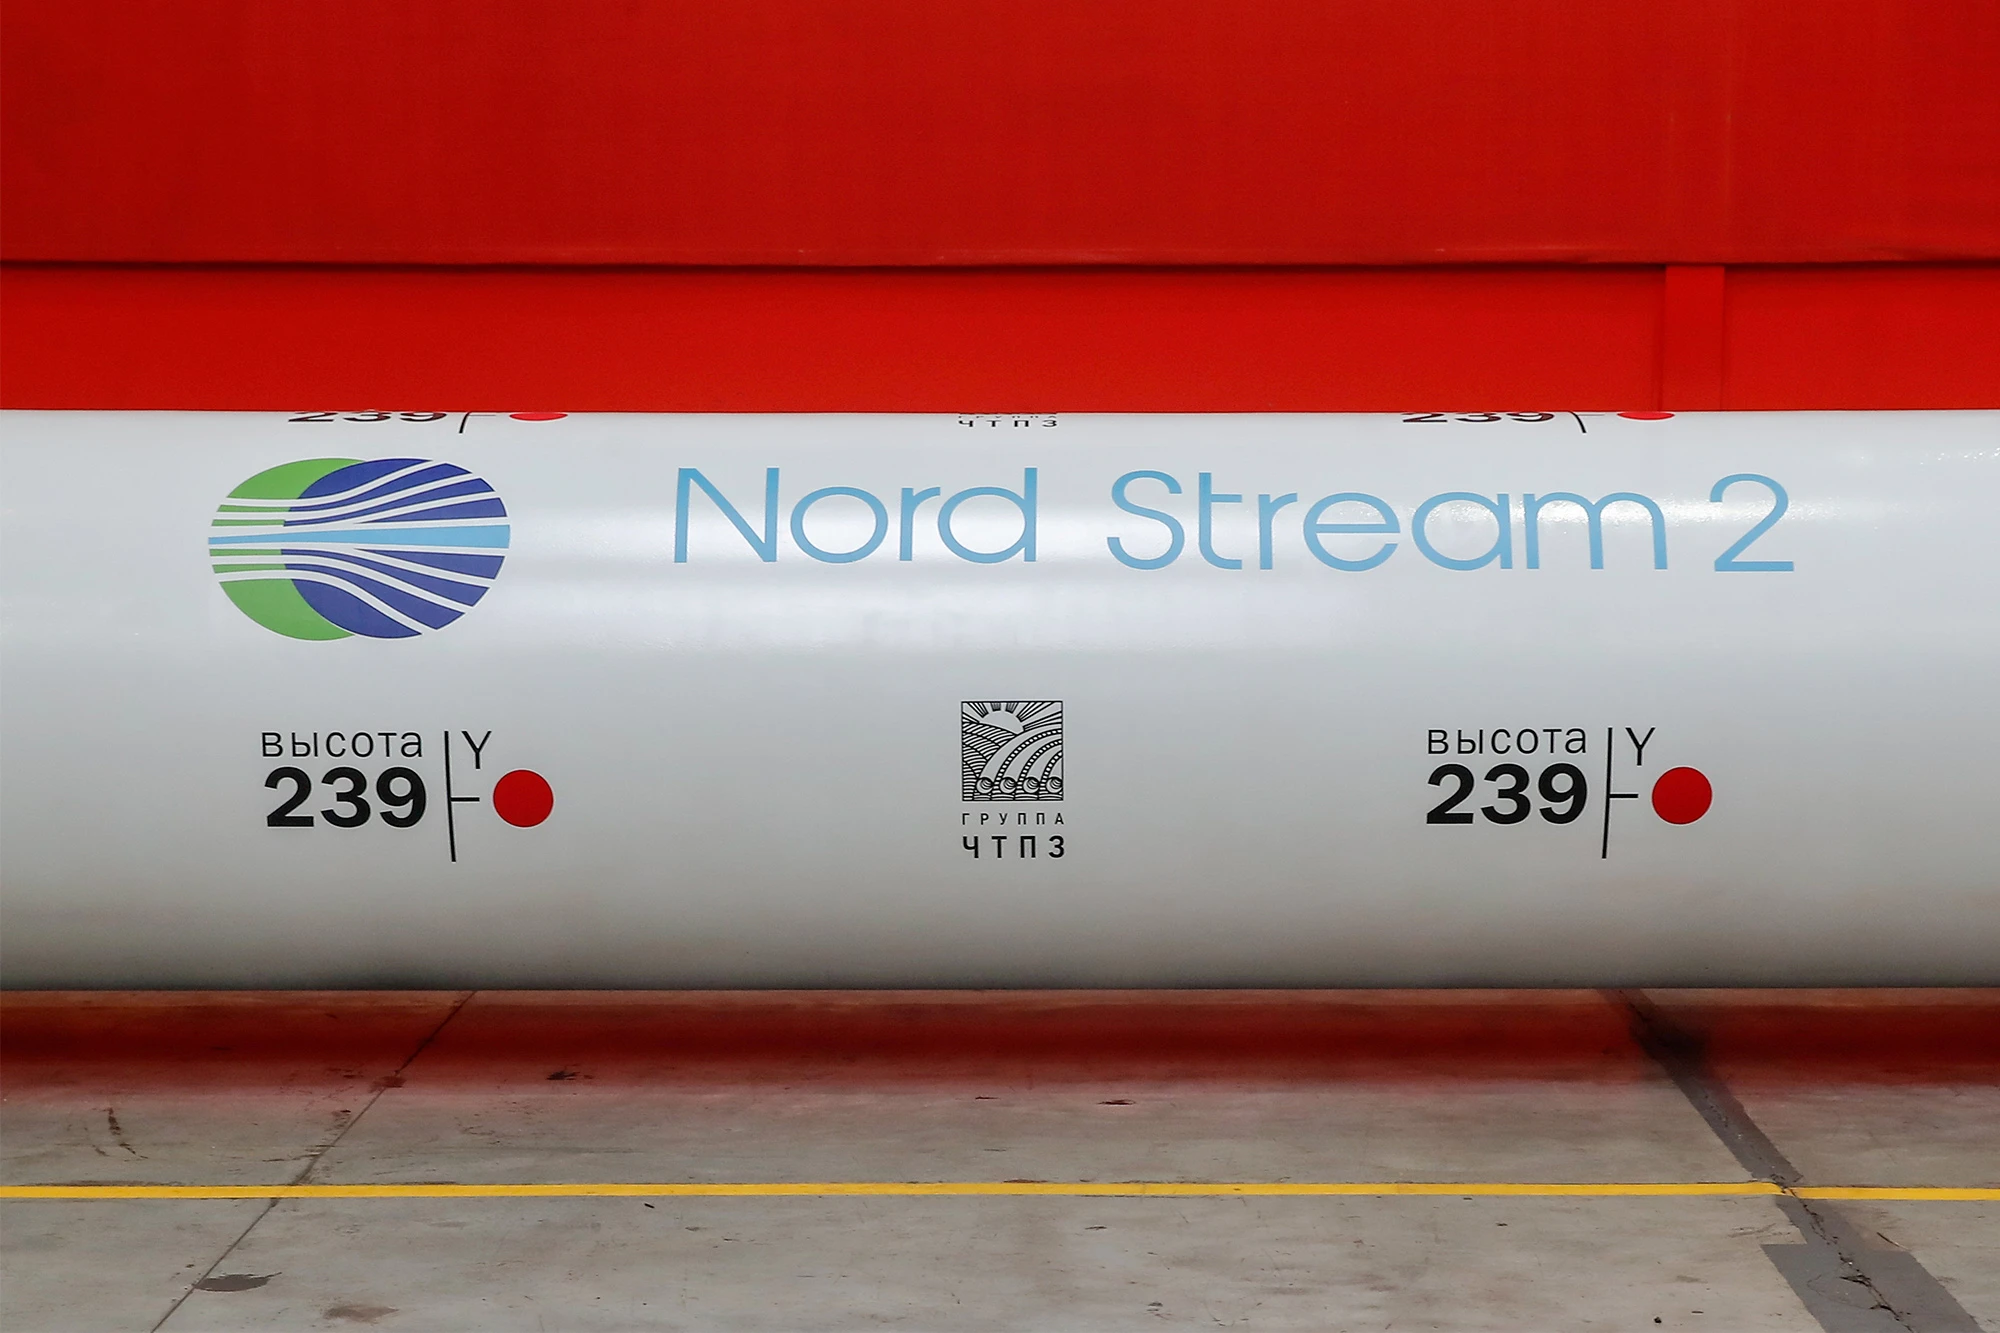 ABD, Rusya'yı Nord Stream 2'ye karşı önlem almakla tehdit etti